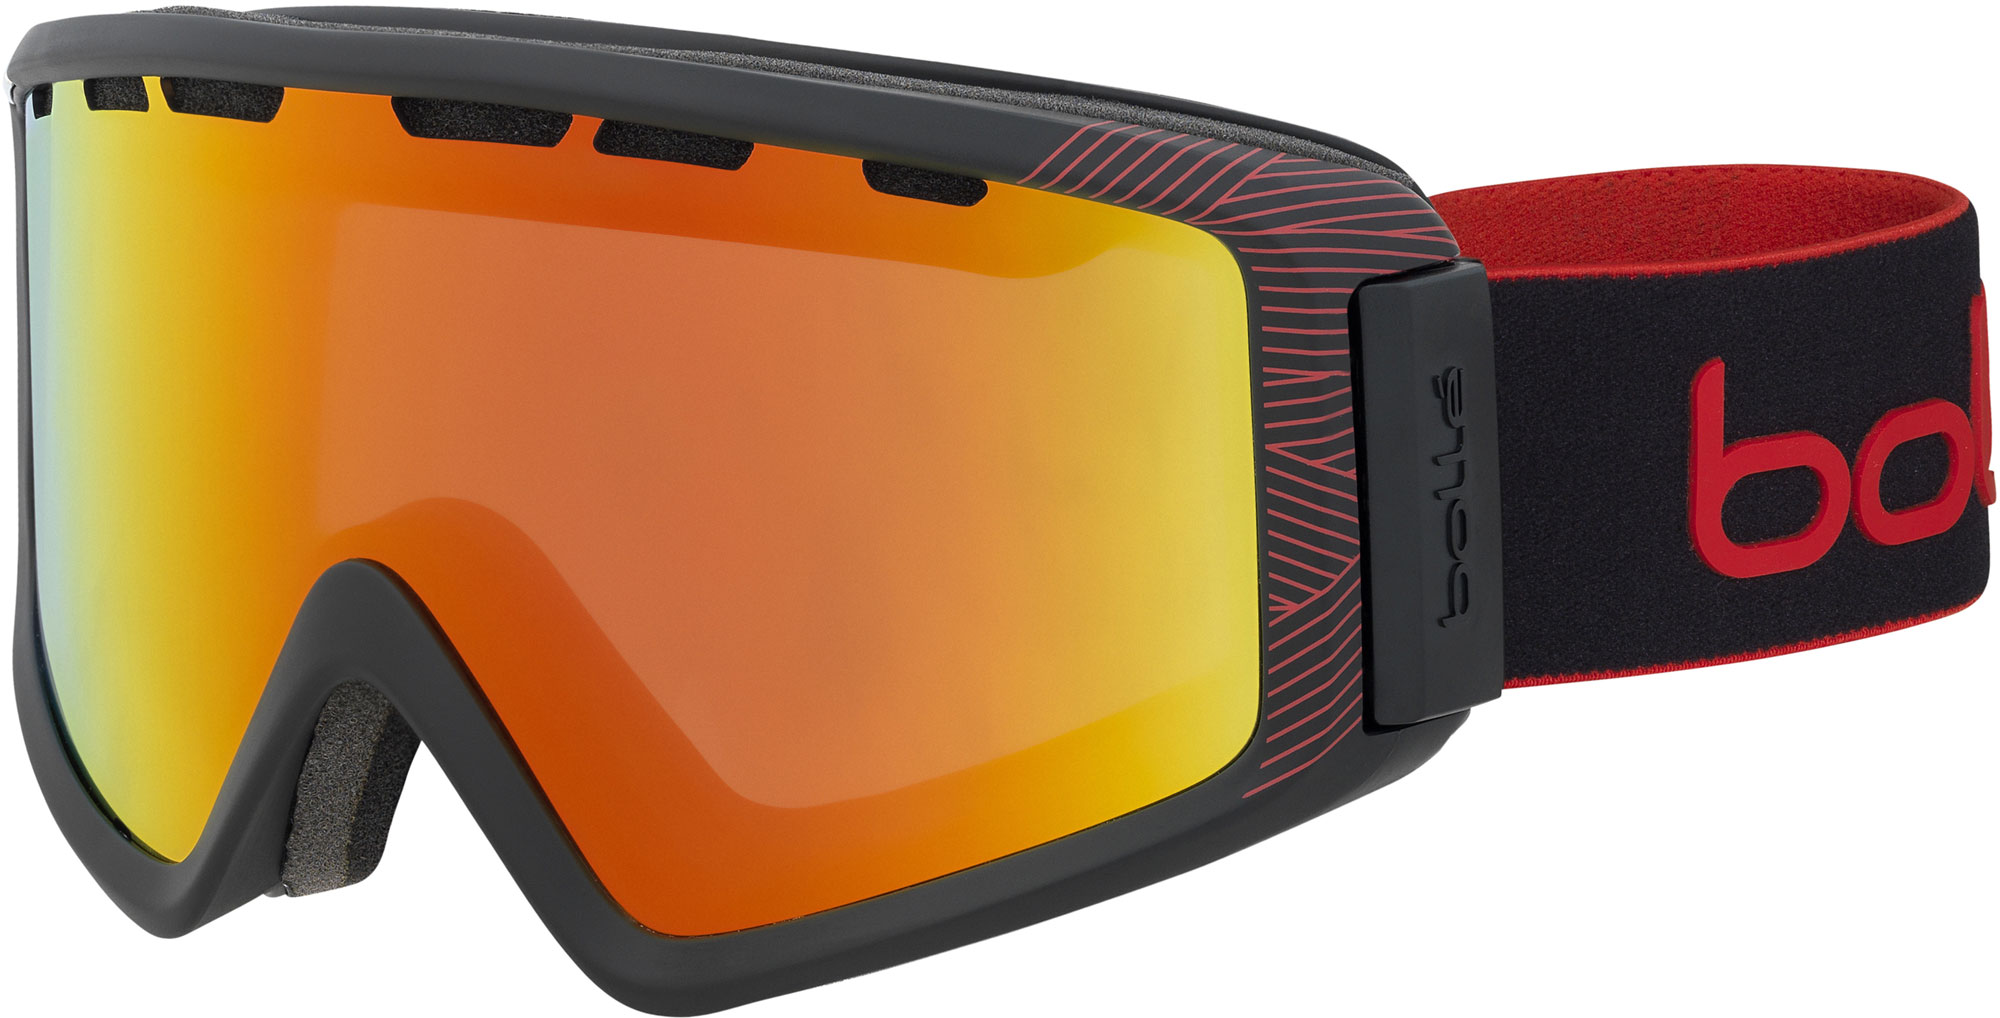 Downhill ski goggles with OTG